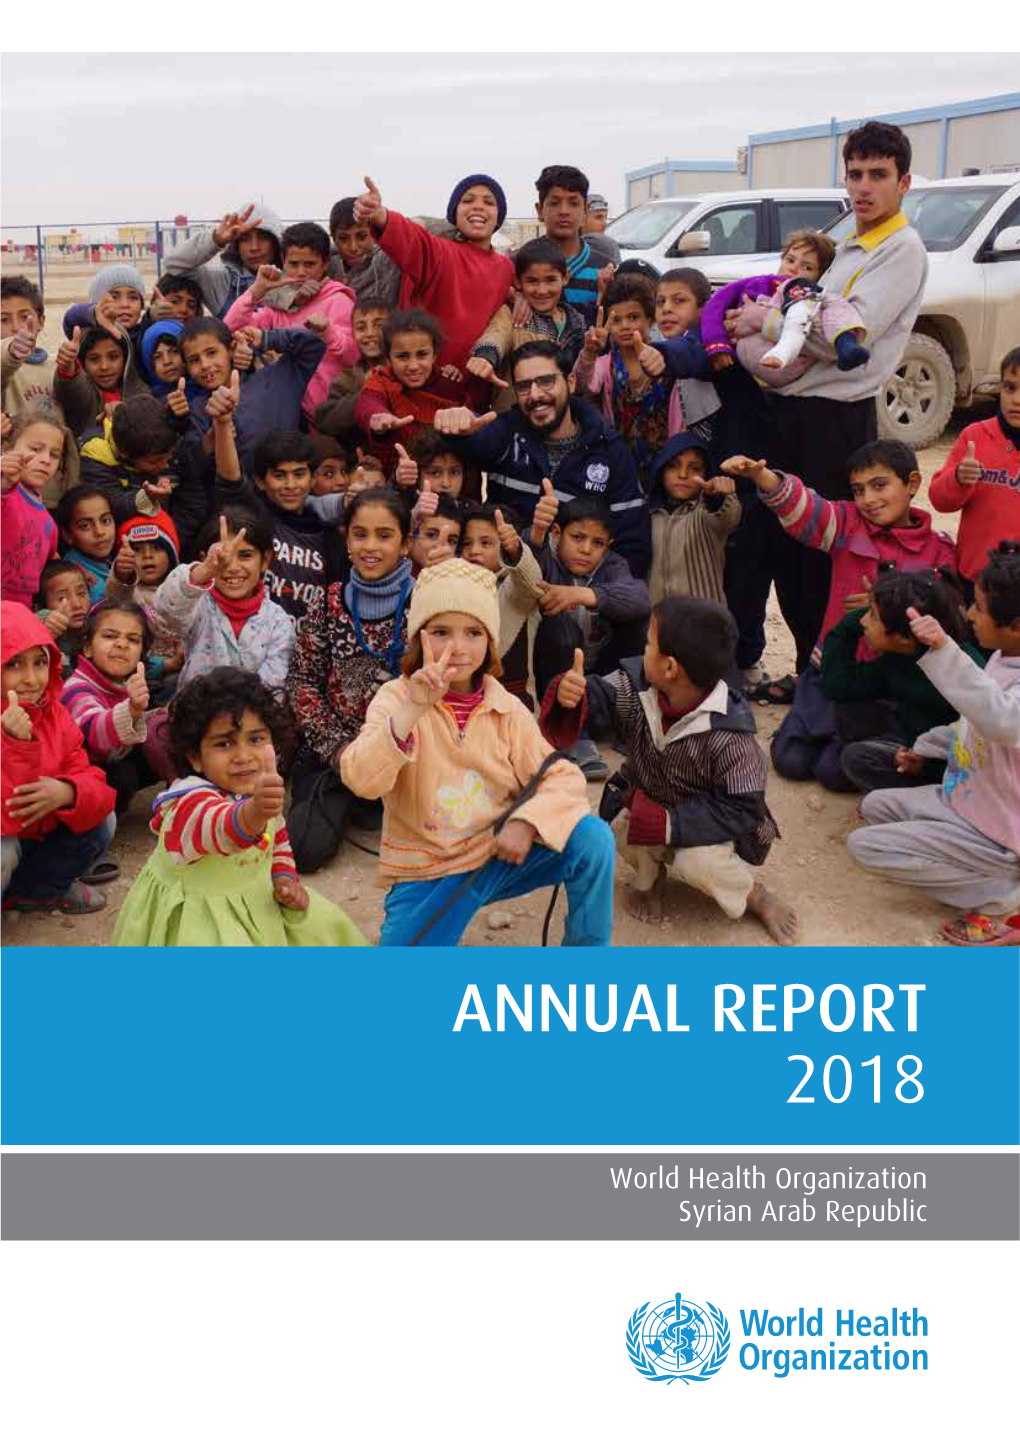 Syrian Arab Republic Annual Report 2018 / World Health Organization